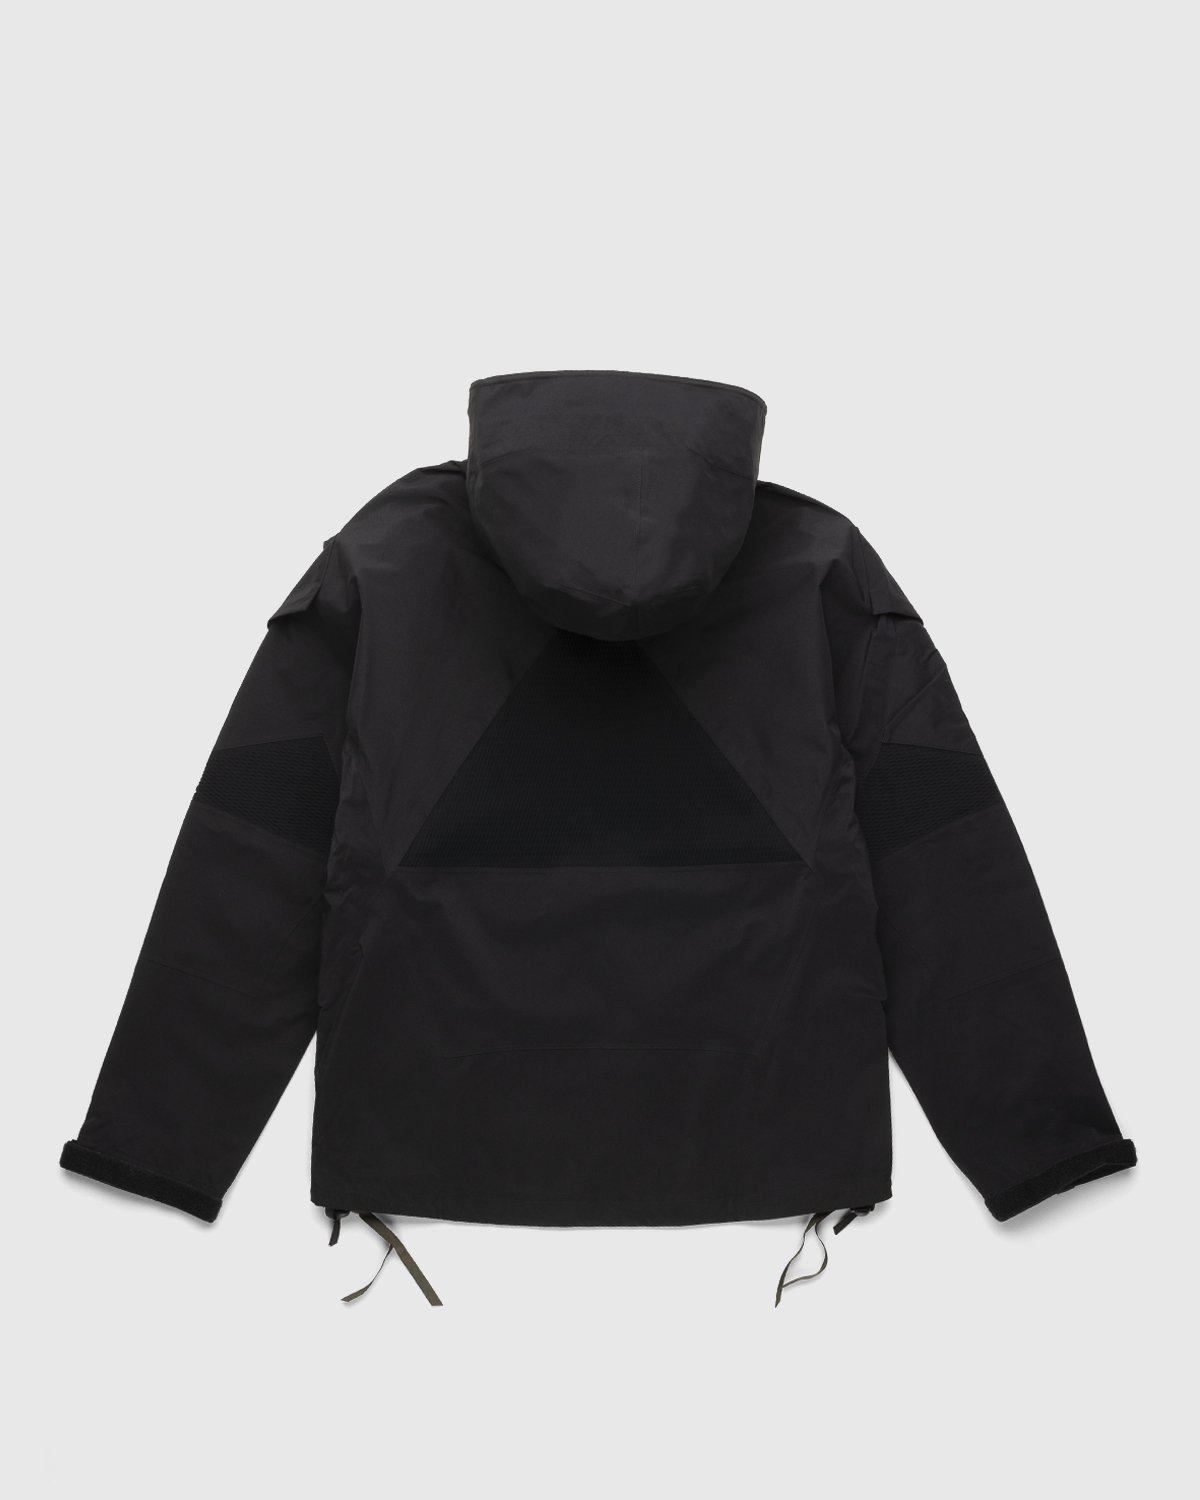 ACRONYM - J16-GT Jacket Black - Clothing - Black - Image 2